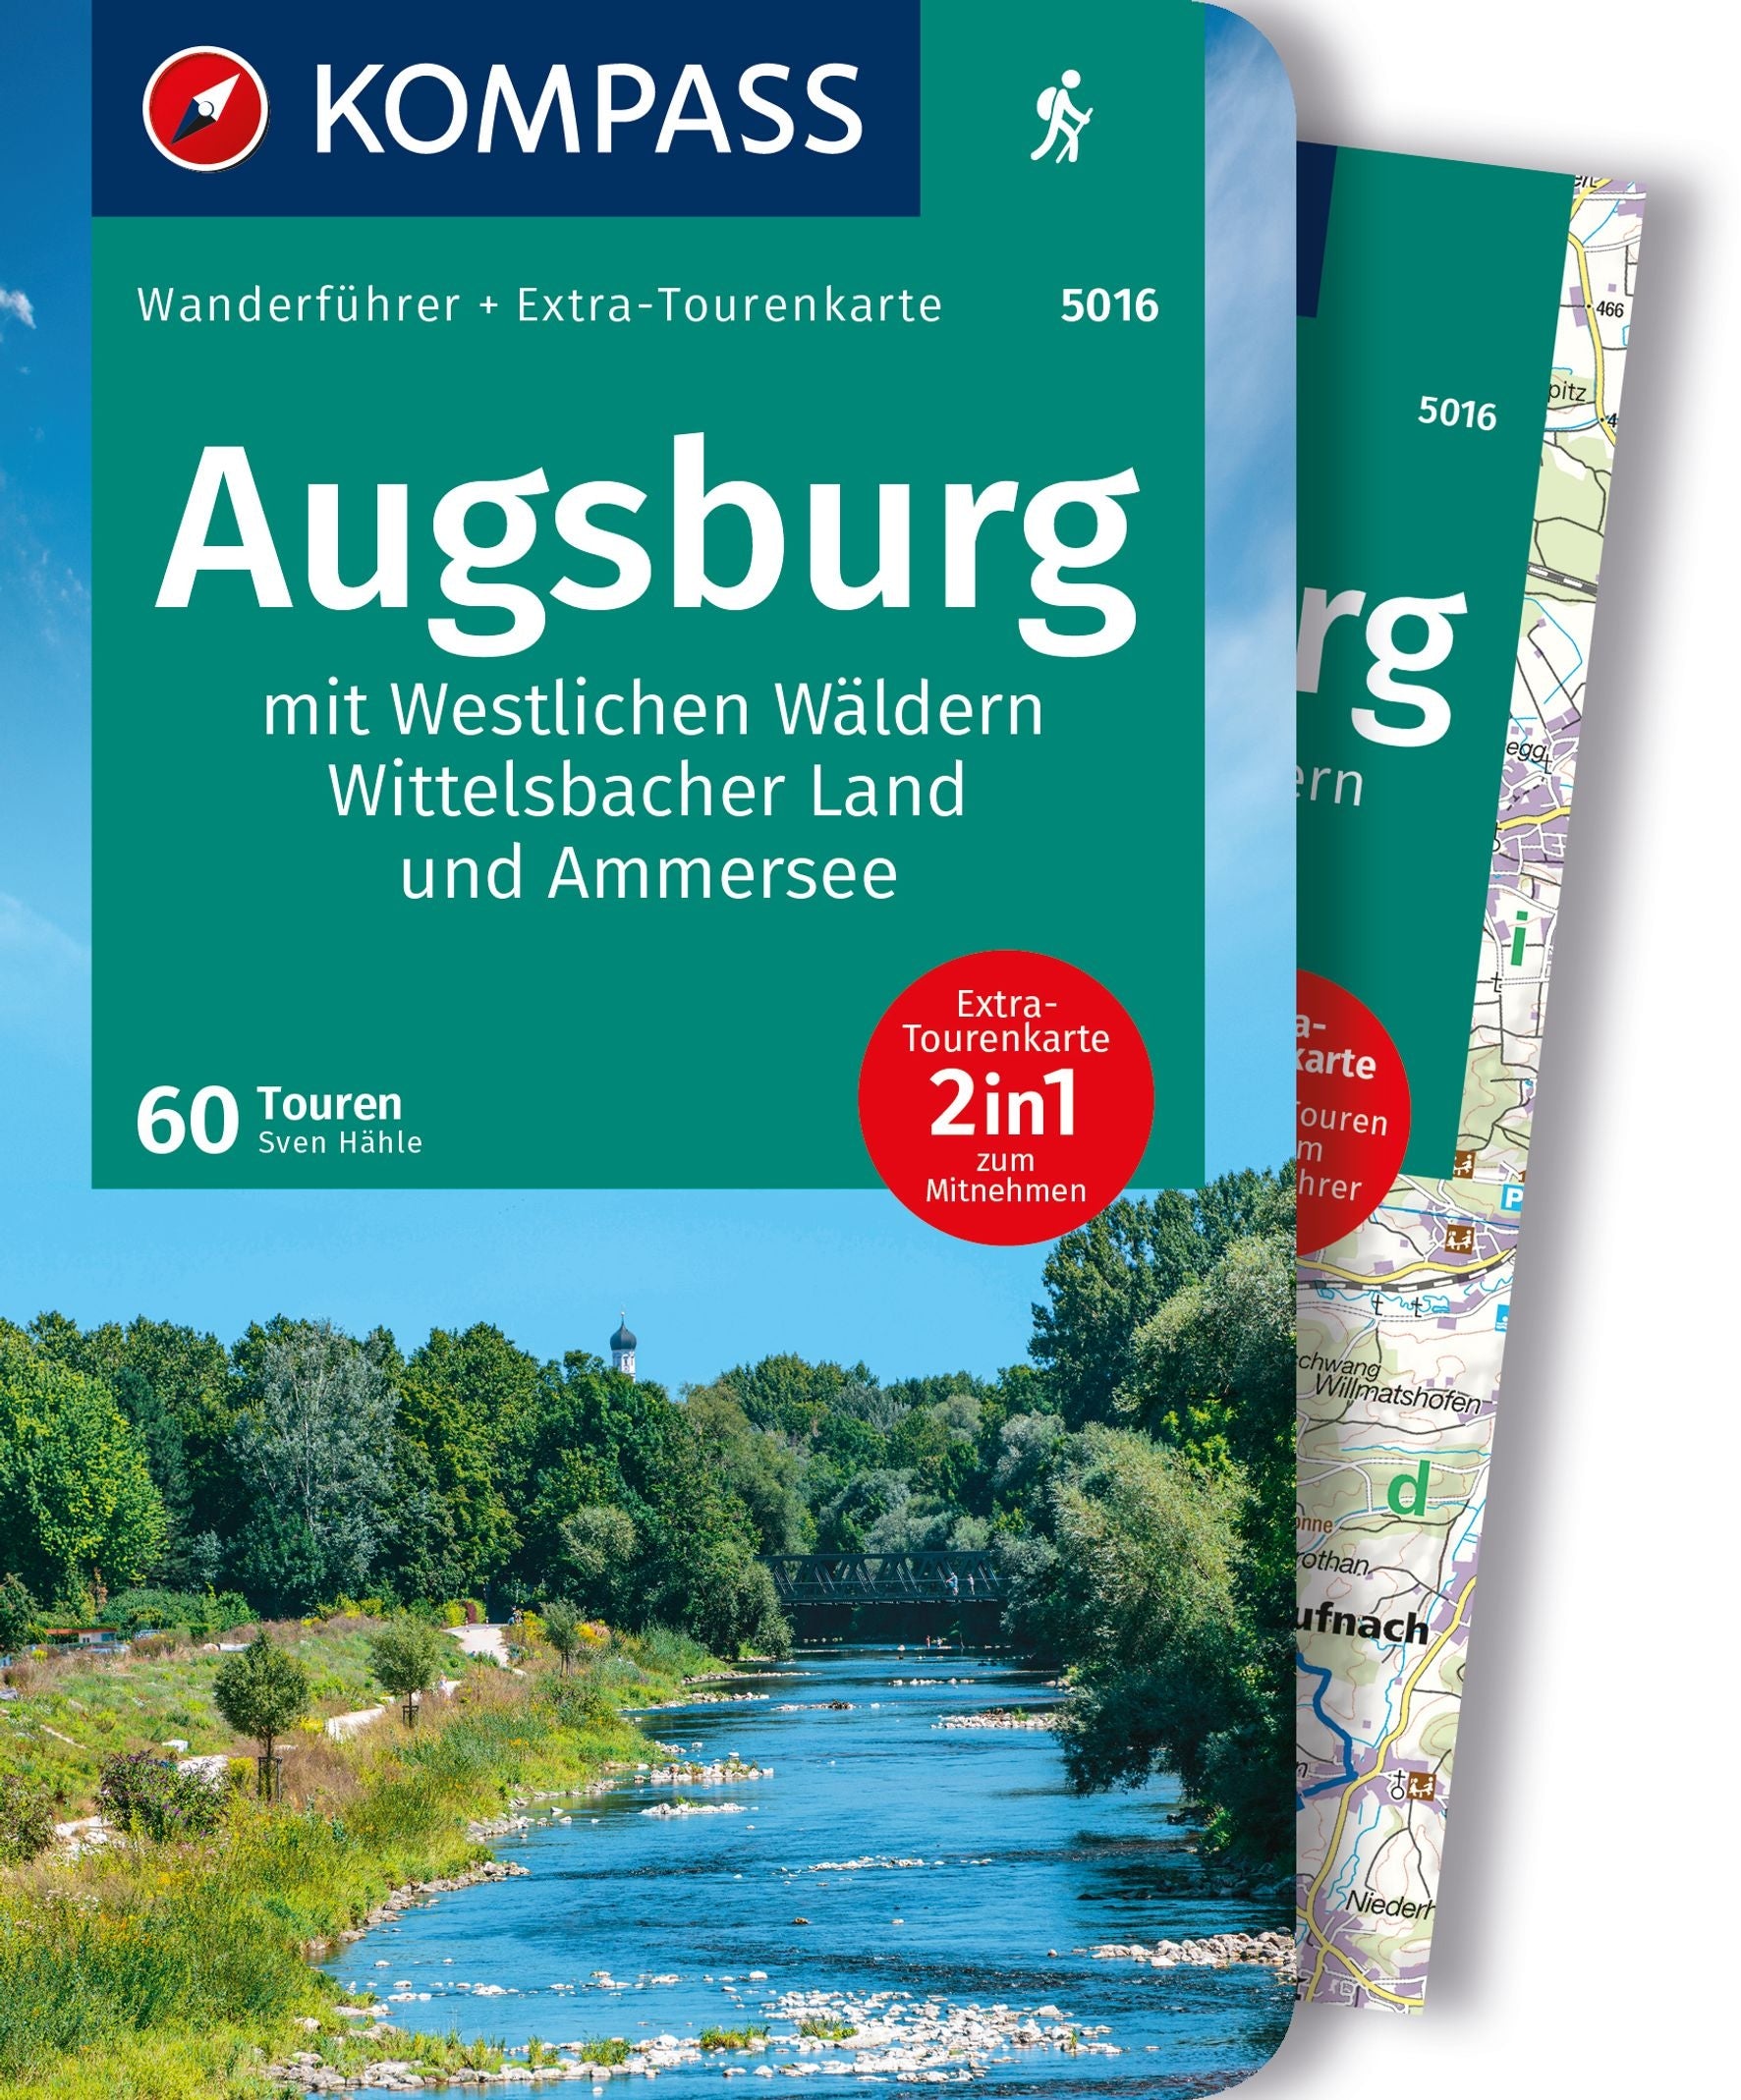 Augsburg mit Westlichen Wäldern, Wittelsbacher Land und Ammersee - Kompass Wanderführer